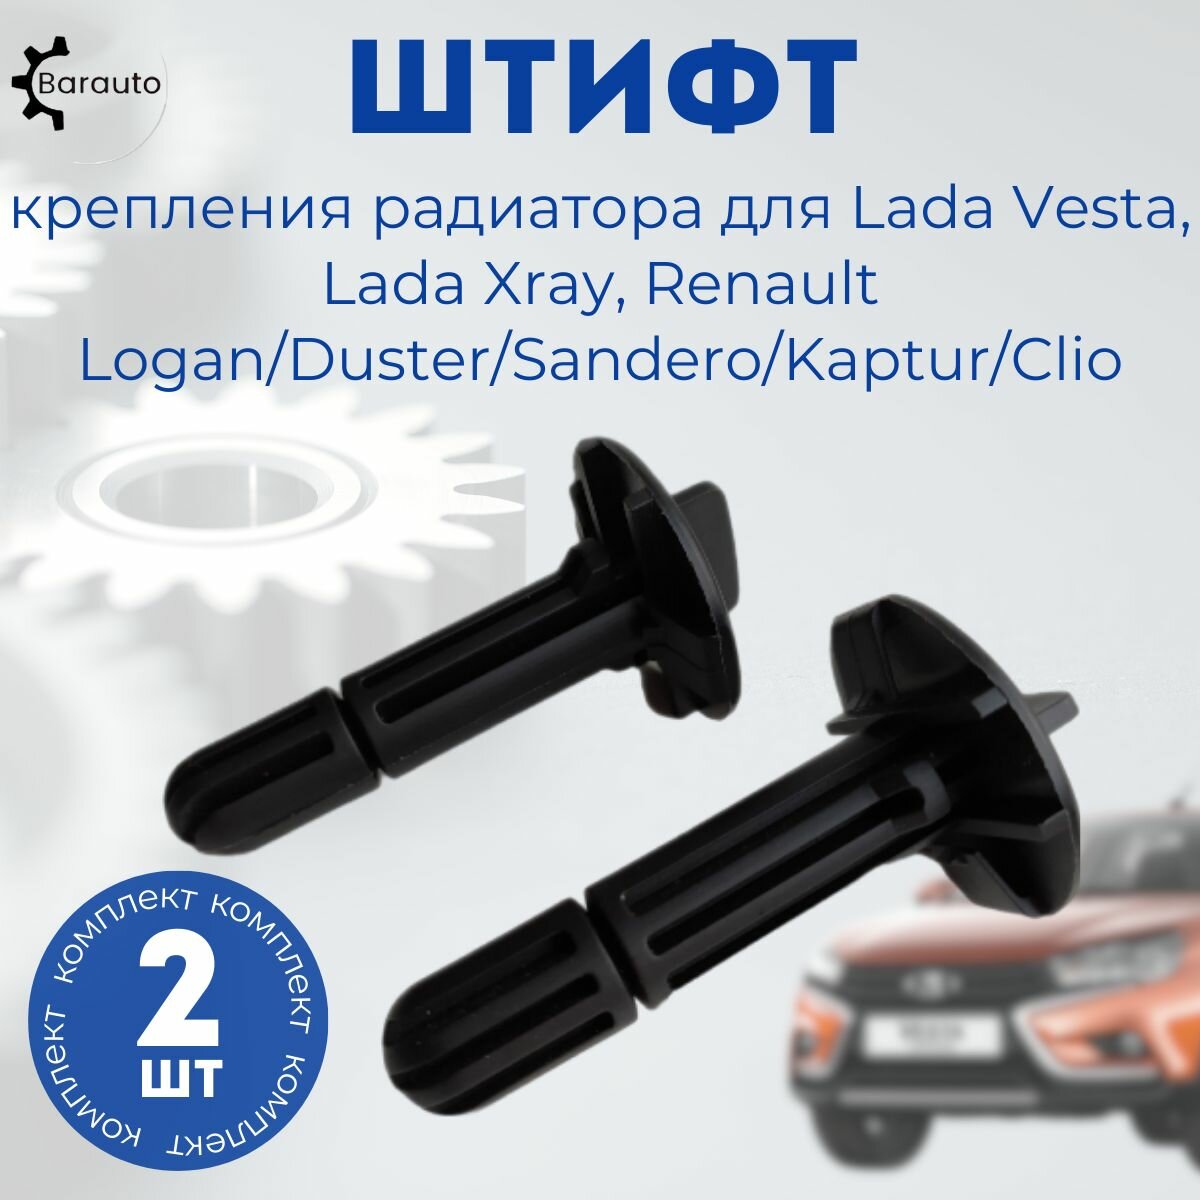 Штифт крепления радиатора клипса радиатора для Лада Веста Lada Vesta